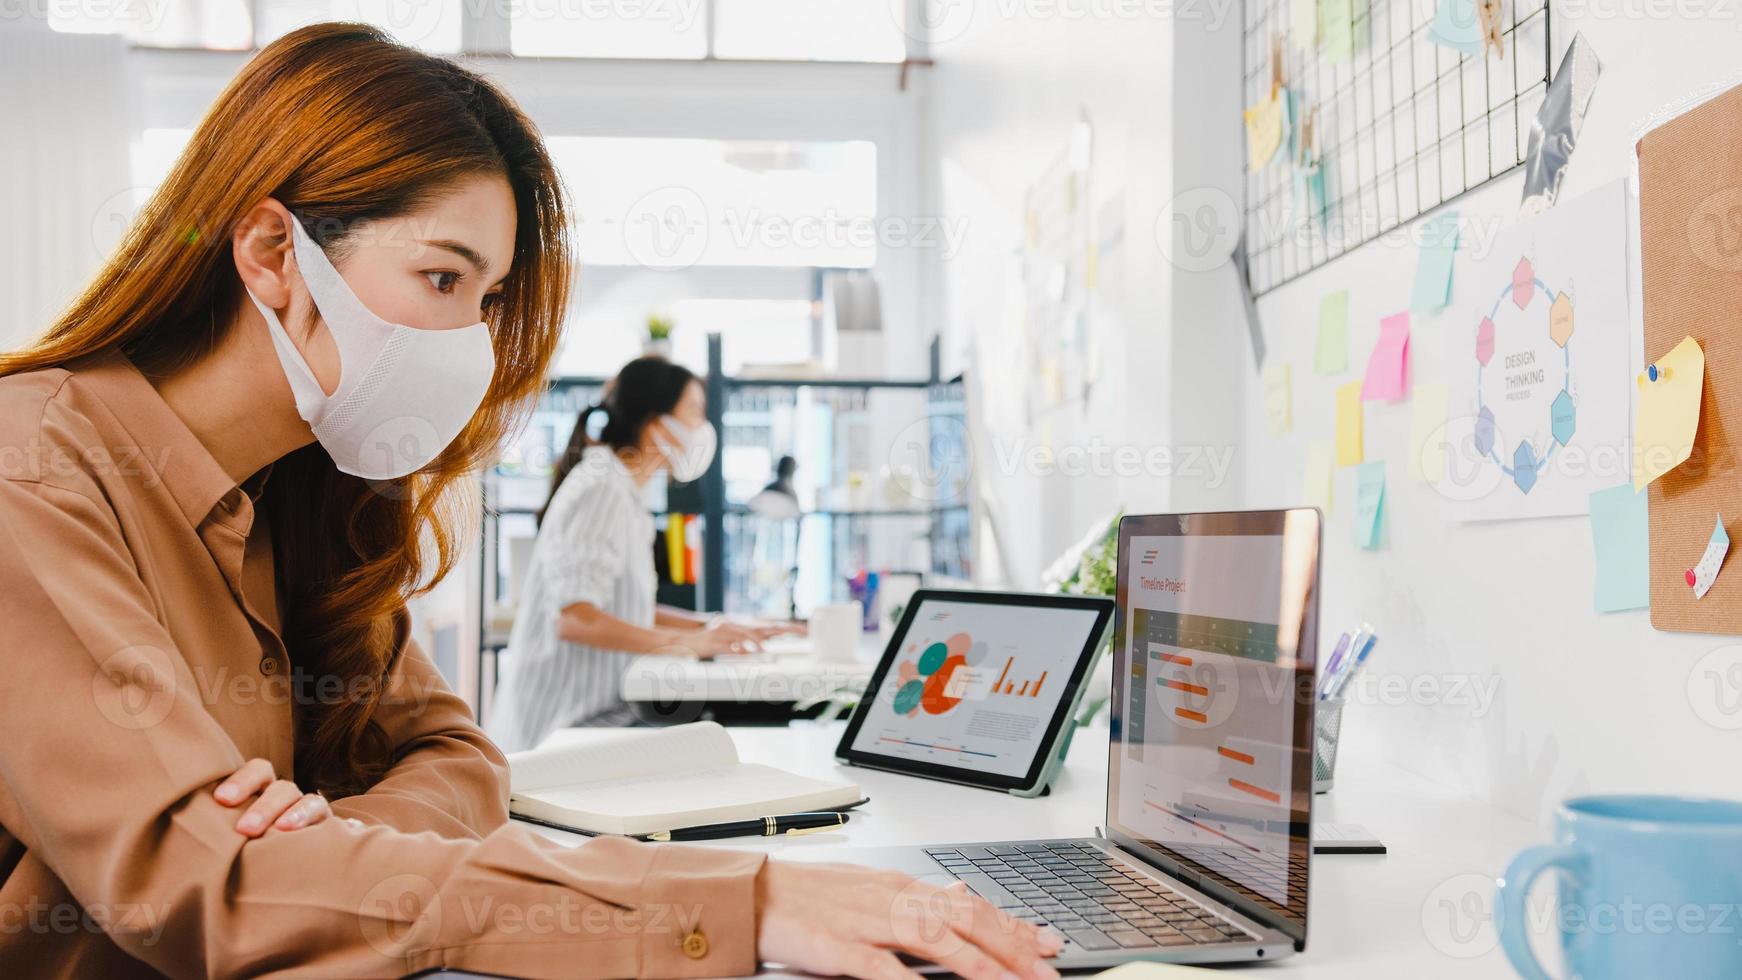 Asiatische Geschäftsfrau, die eine medizinische Gesichtsmaske für soziale Distanzierung in einer neuen normalen Situation zur Virusprävention trägt, während sie den Laptop wieder bei der Arbeit im Büro verwendet. Lebensstil nach dem Corona-Virus. foto